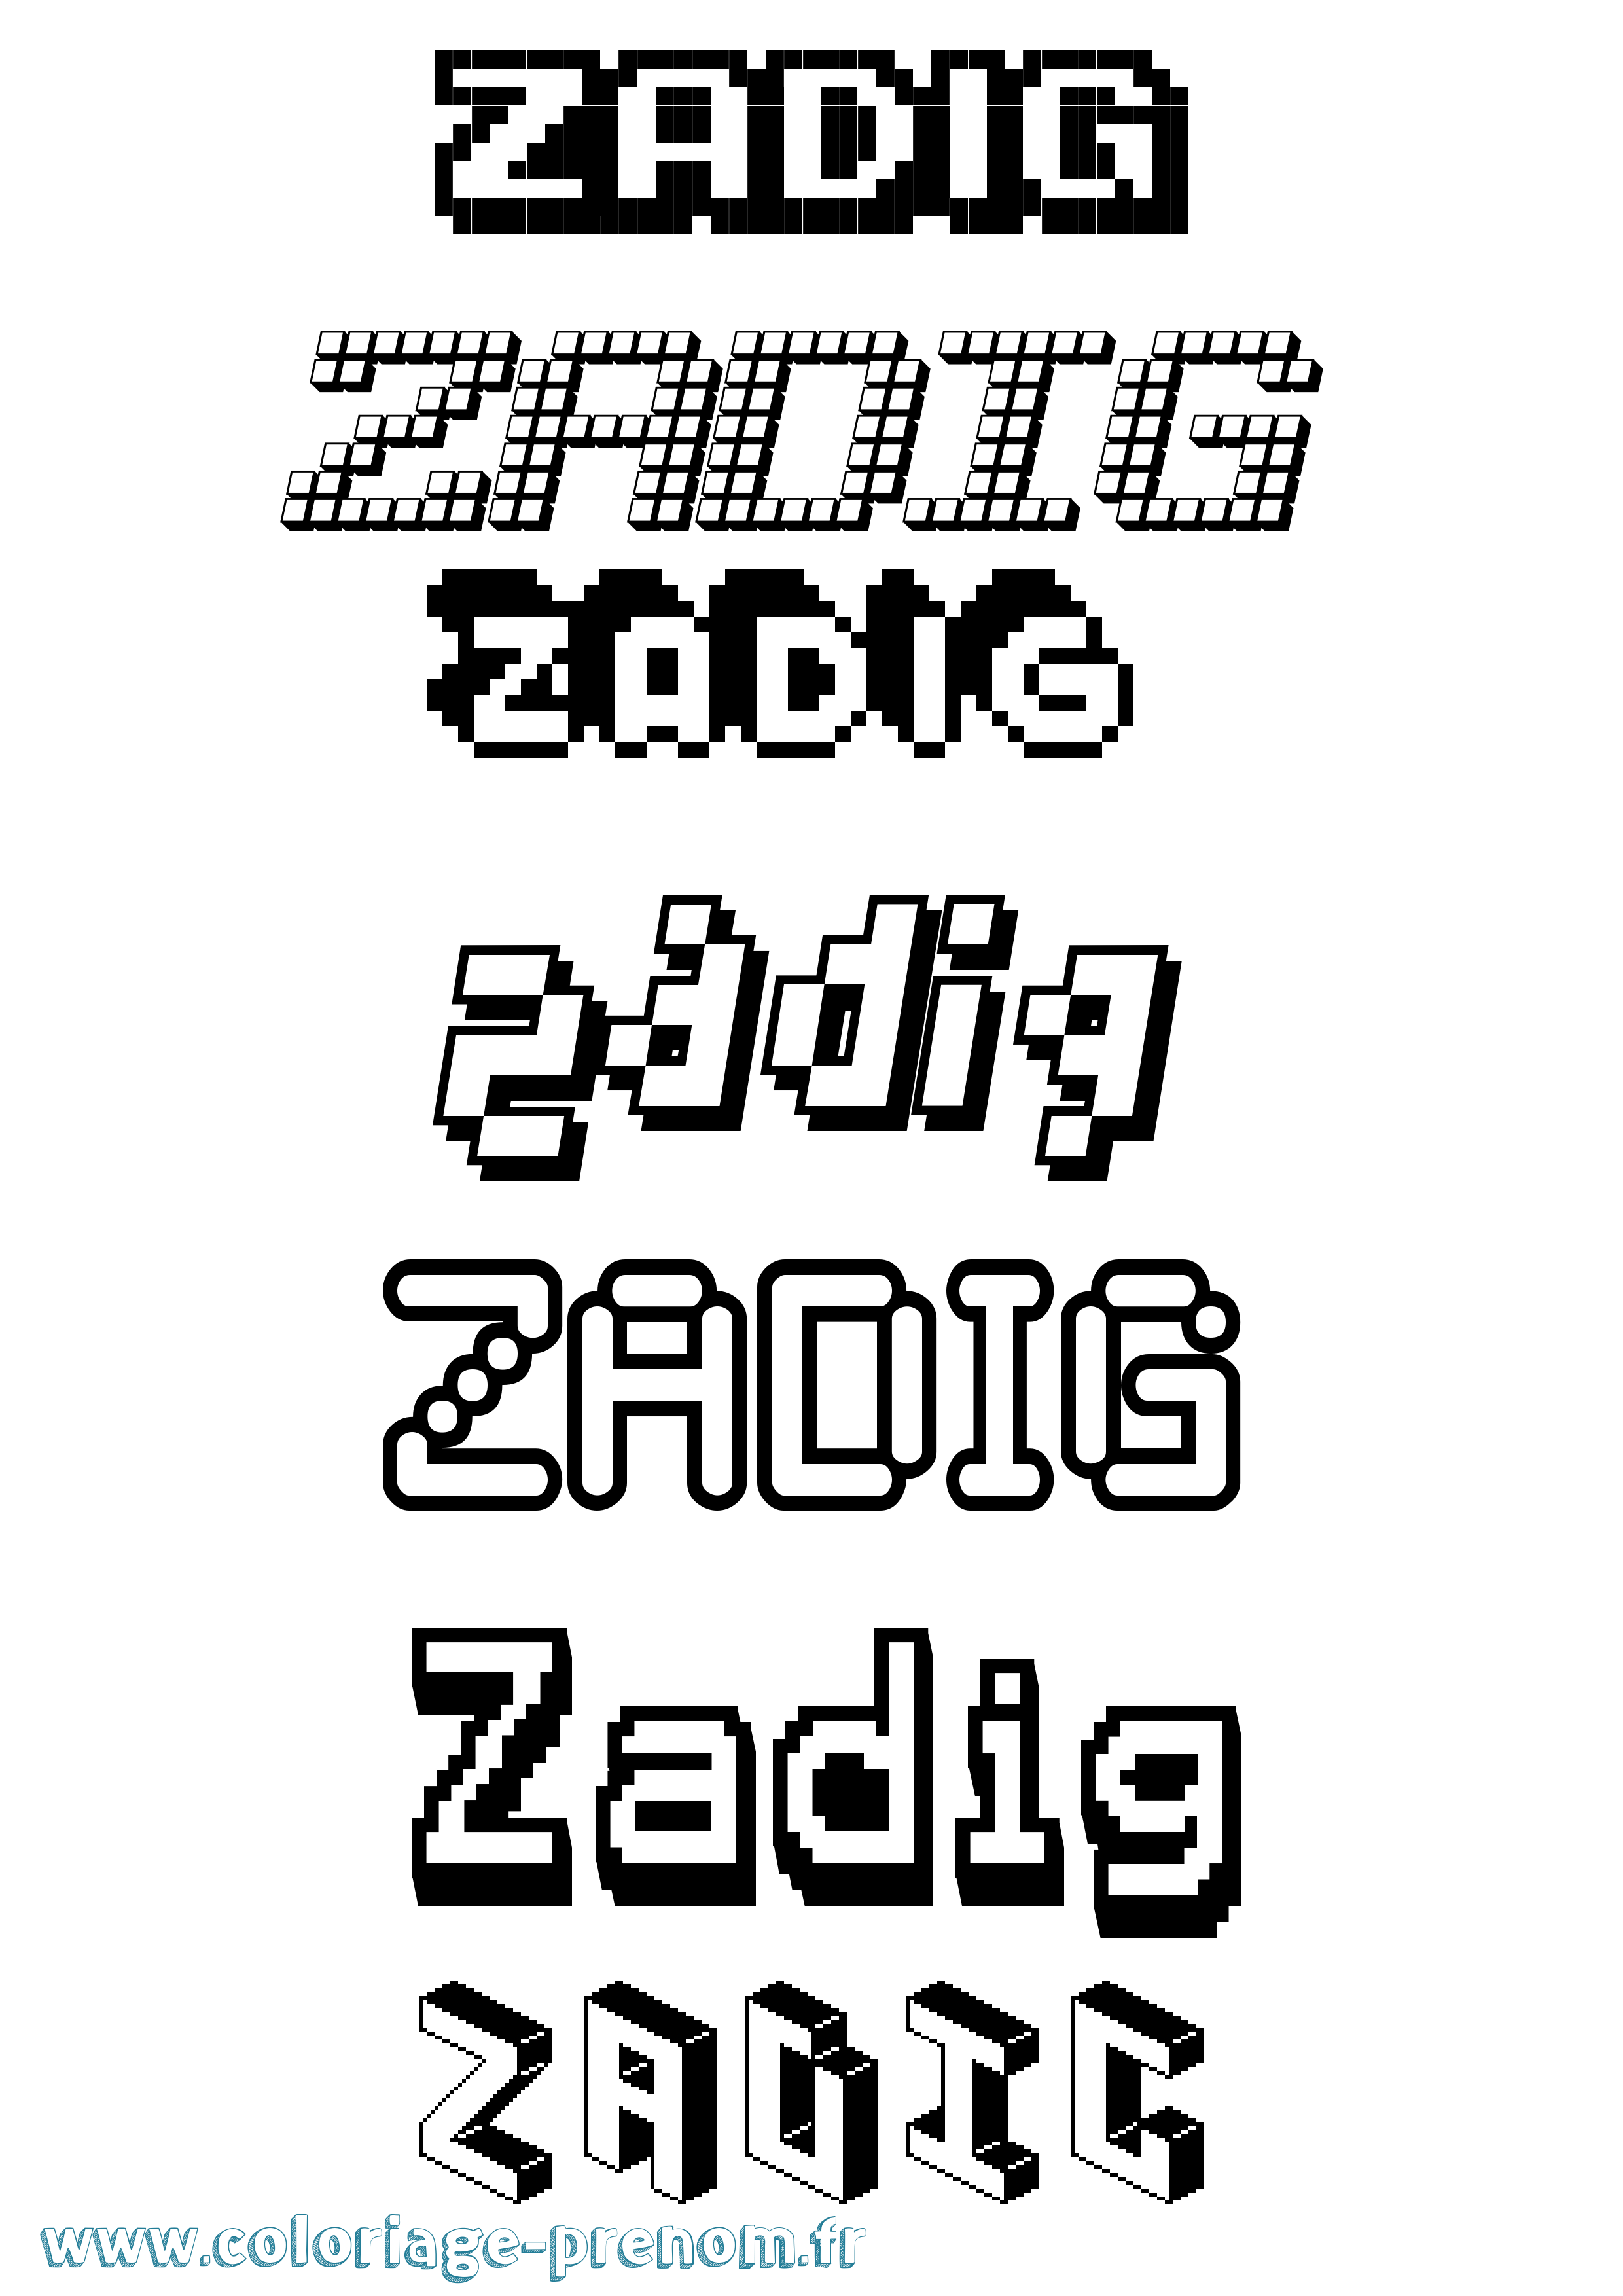 Coloriage prénom Zadig Pixel